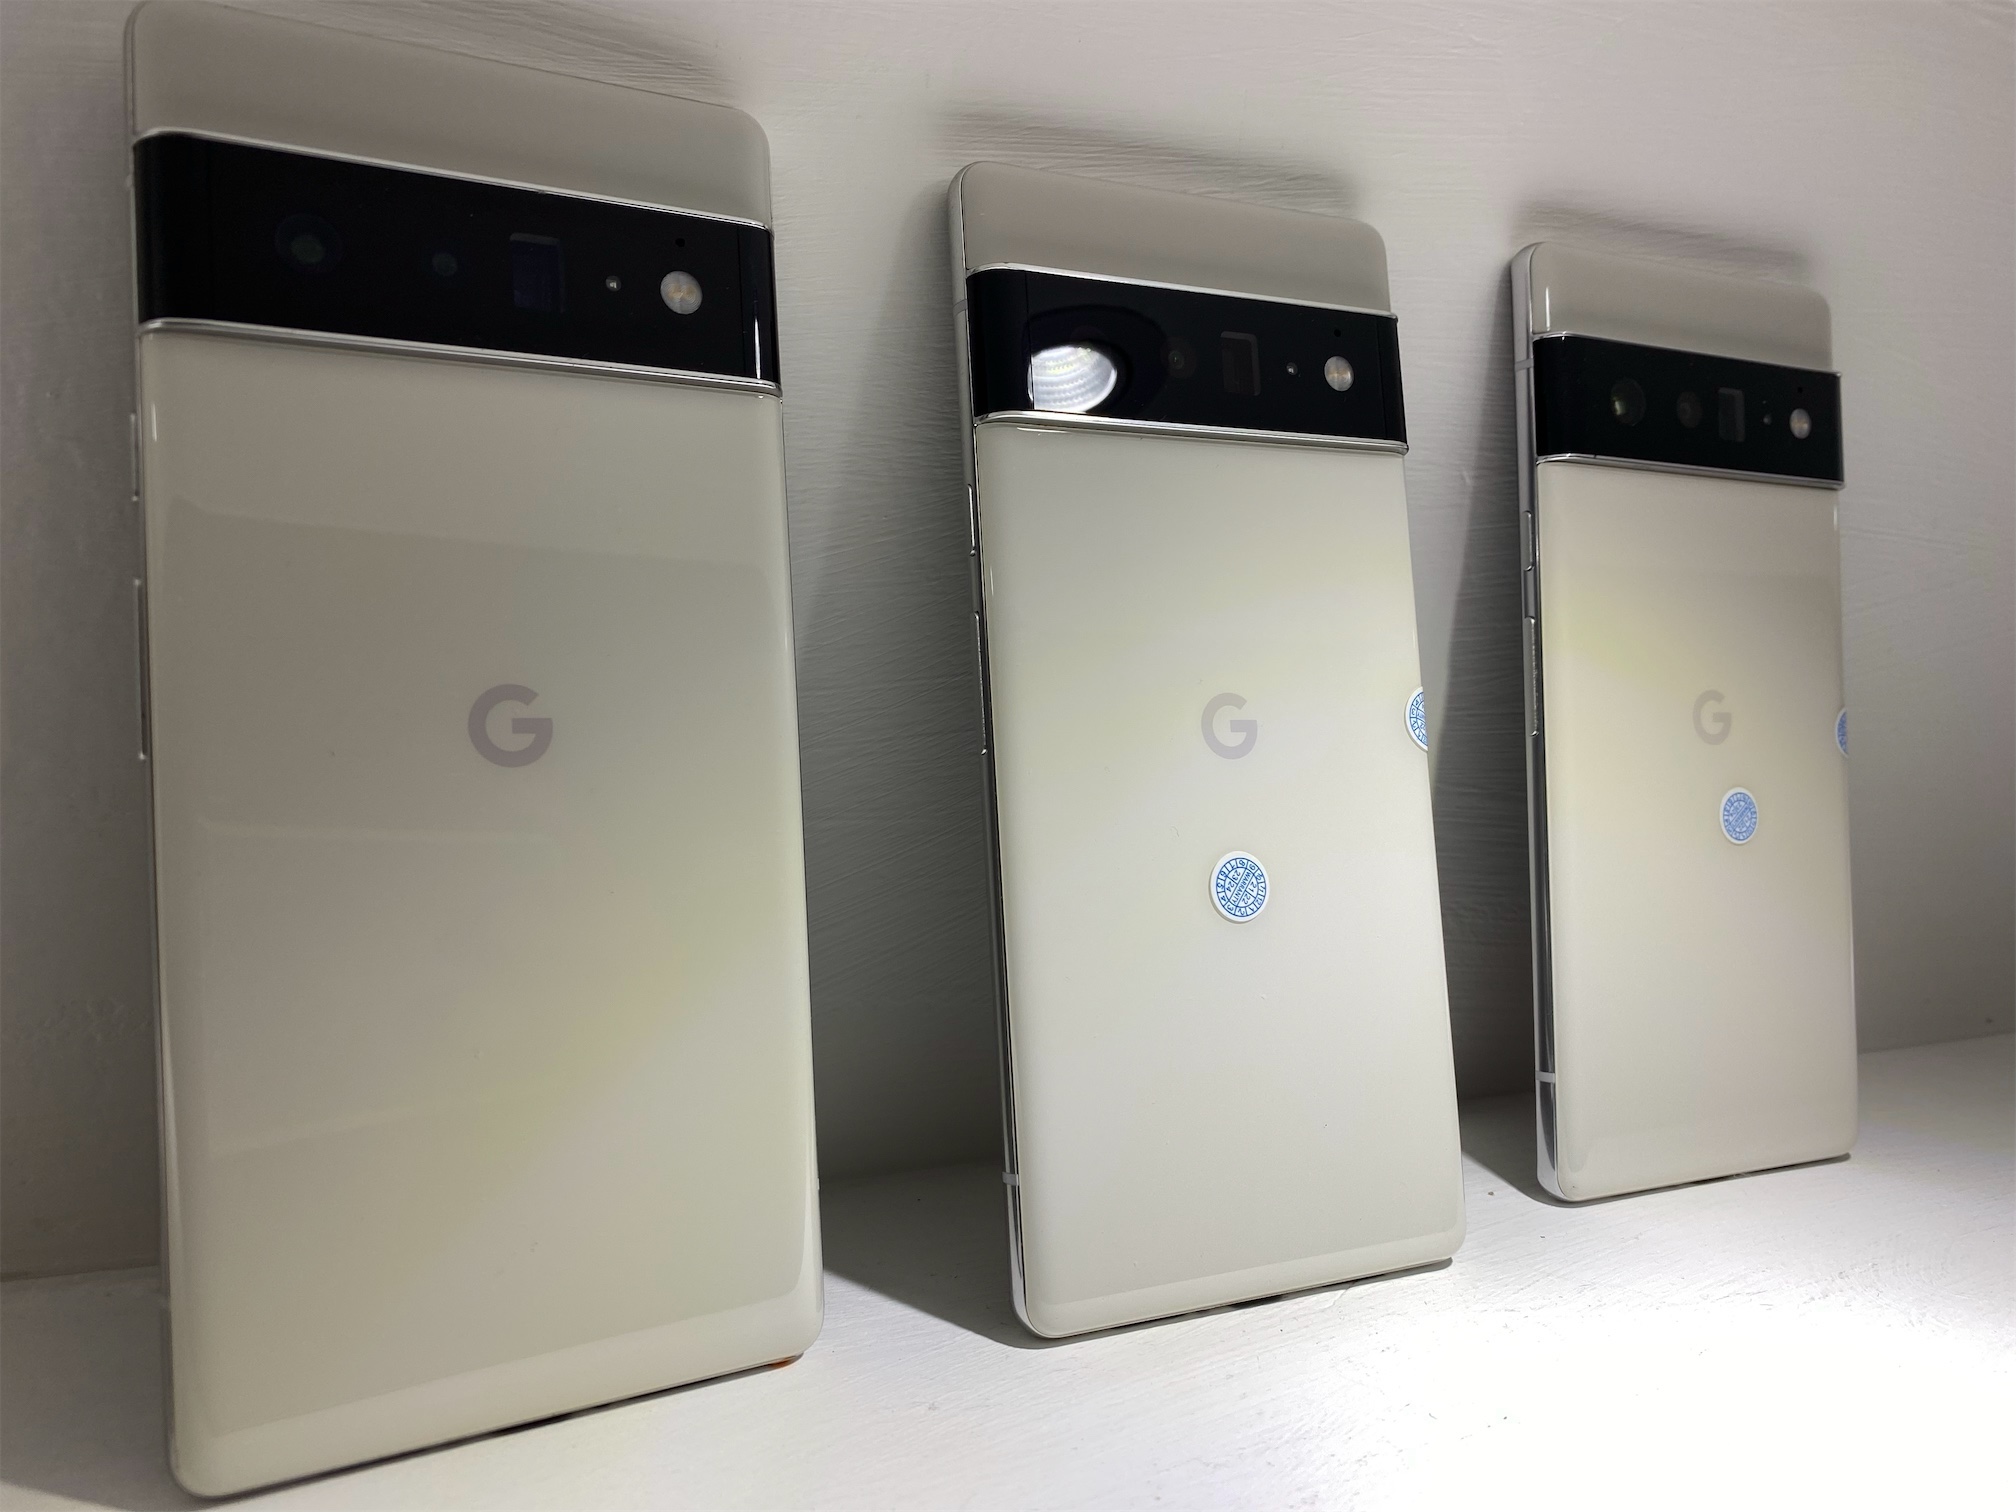 celulares y tabletas - Google 6 pro 